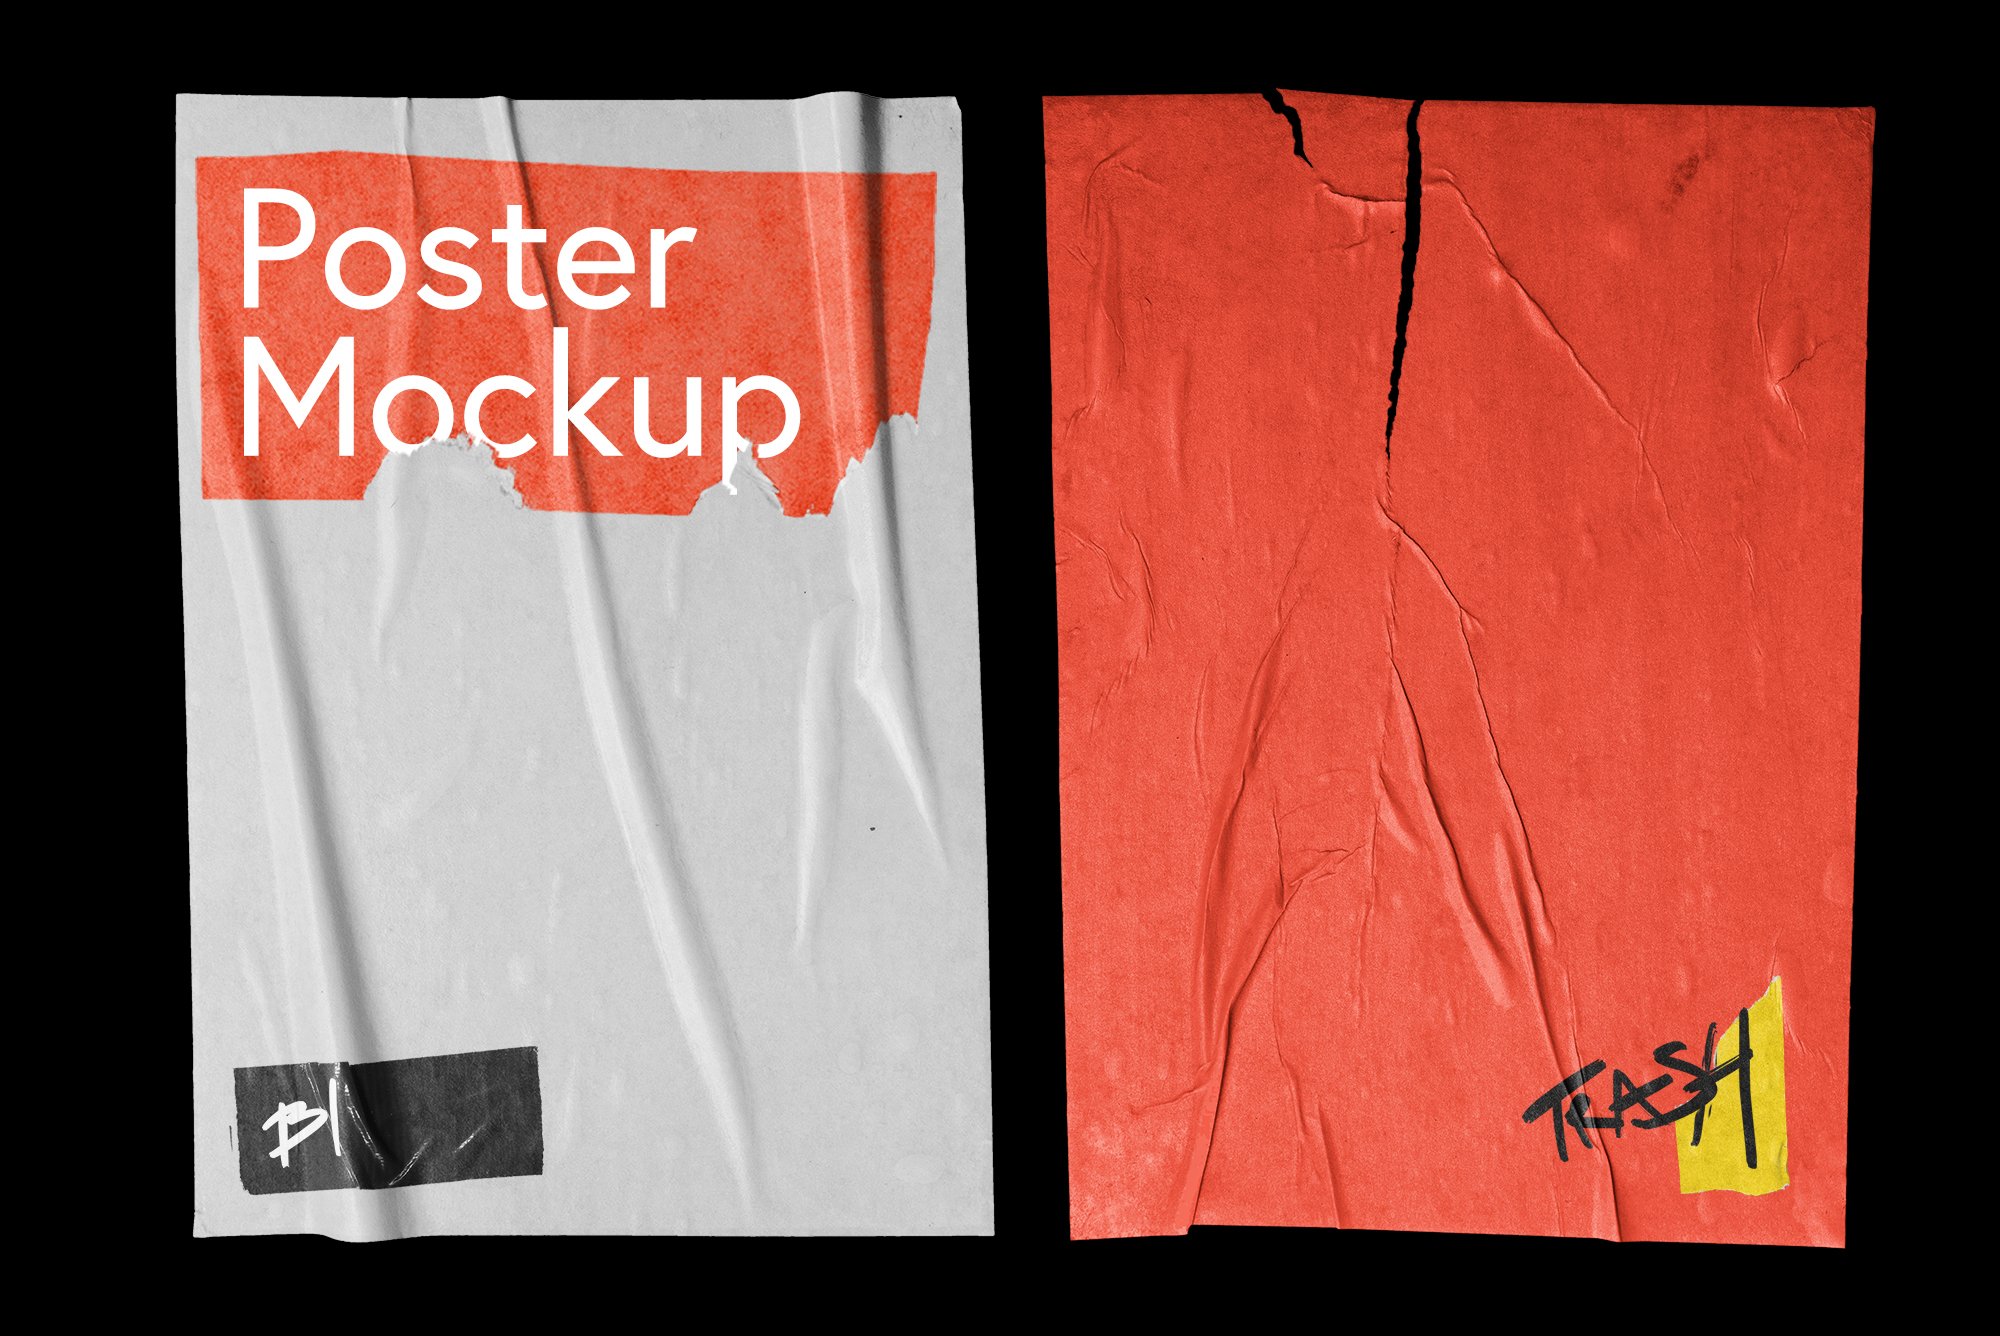 30张独特逼真褶皱视觉海报样机巨型包 30 Poster Mockup Mega Pack 样机素材 第1张